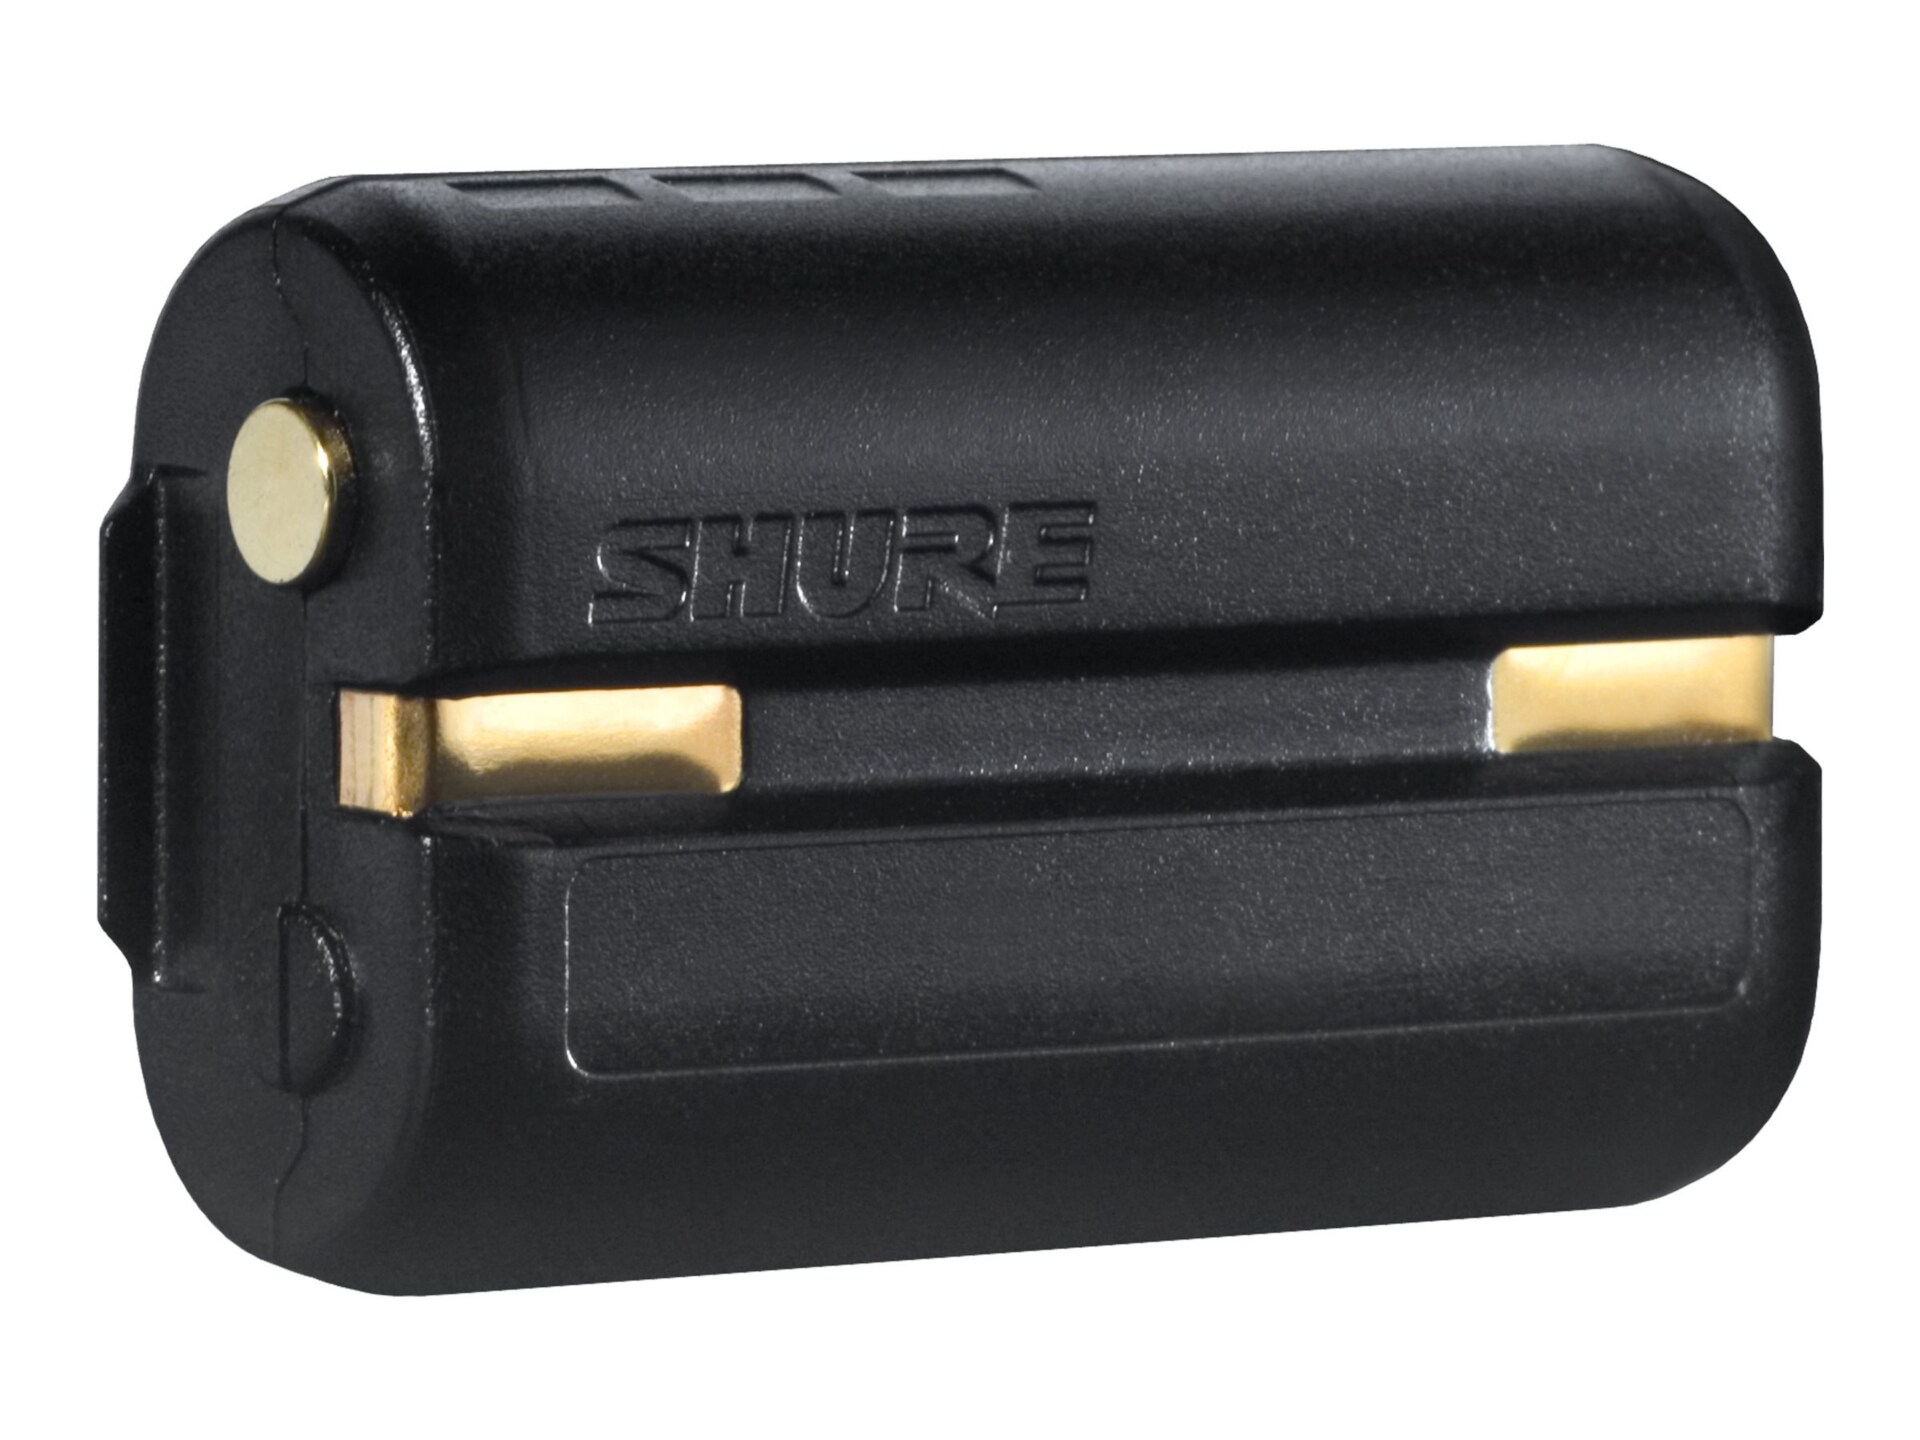 Shure SB900A battery - Li-Ion